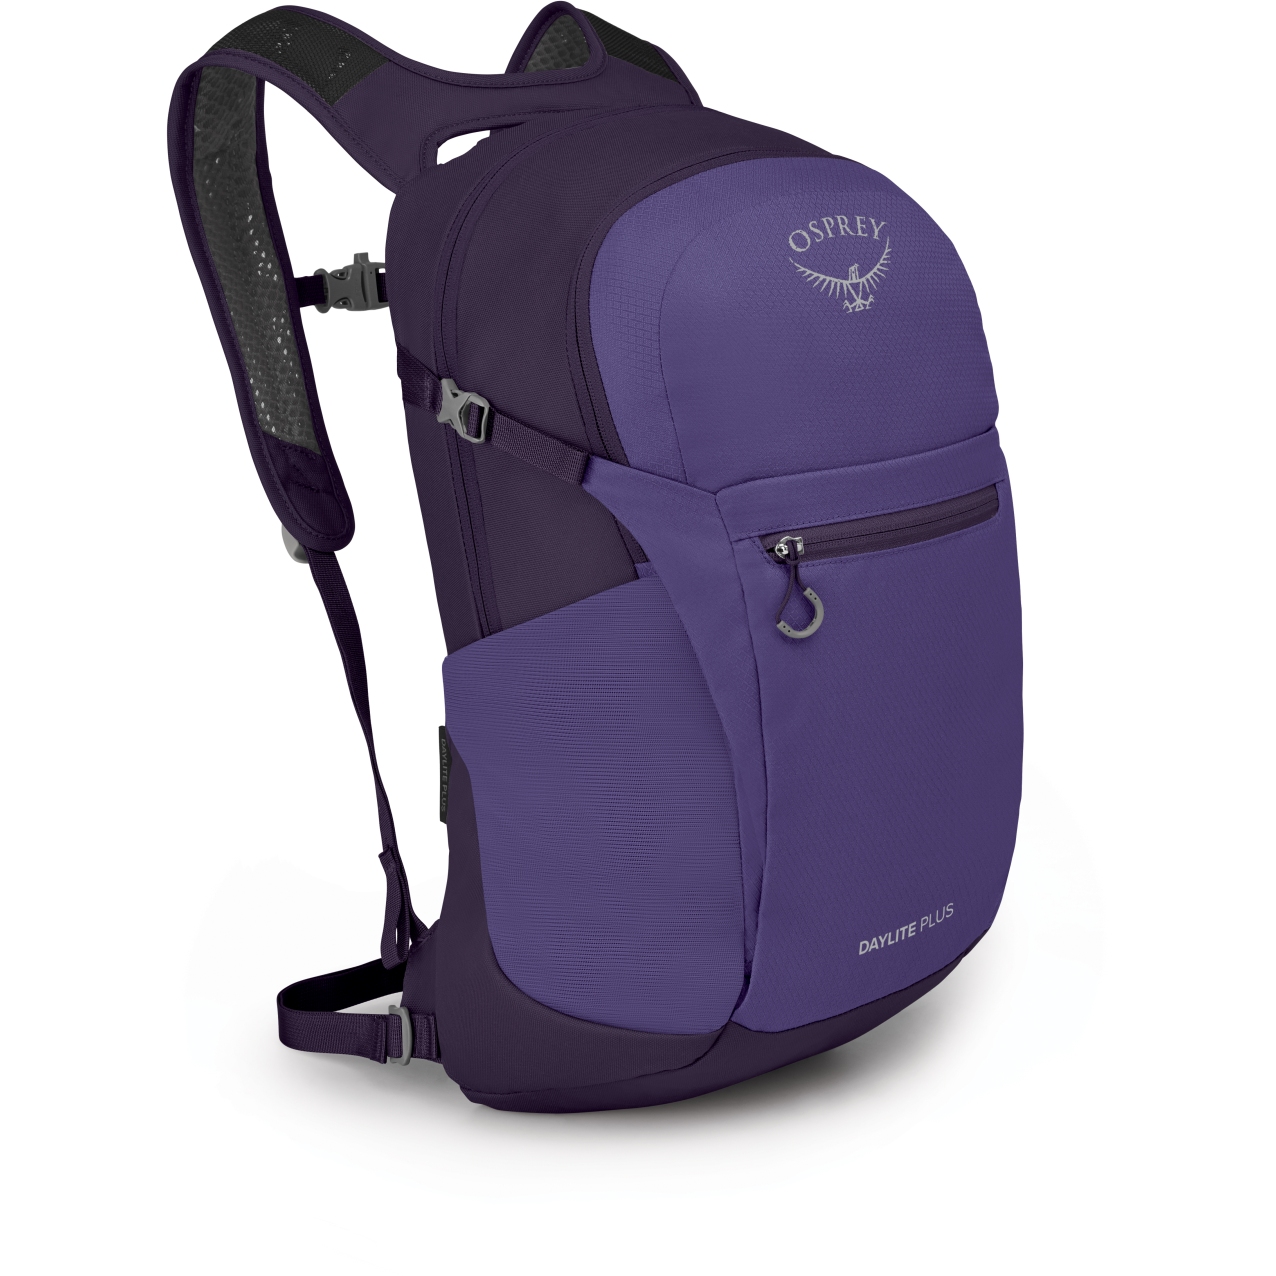 Produktbild von Osprey Daylite Plus Rucksack - Dream Purple